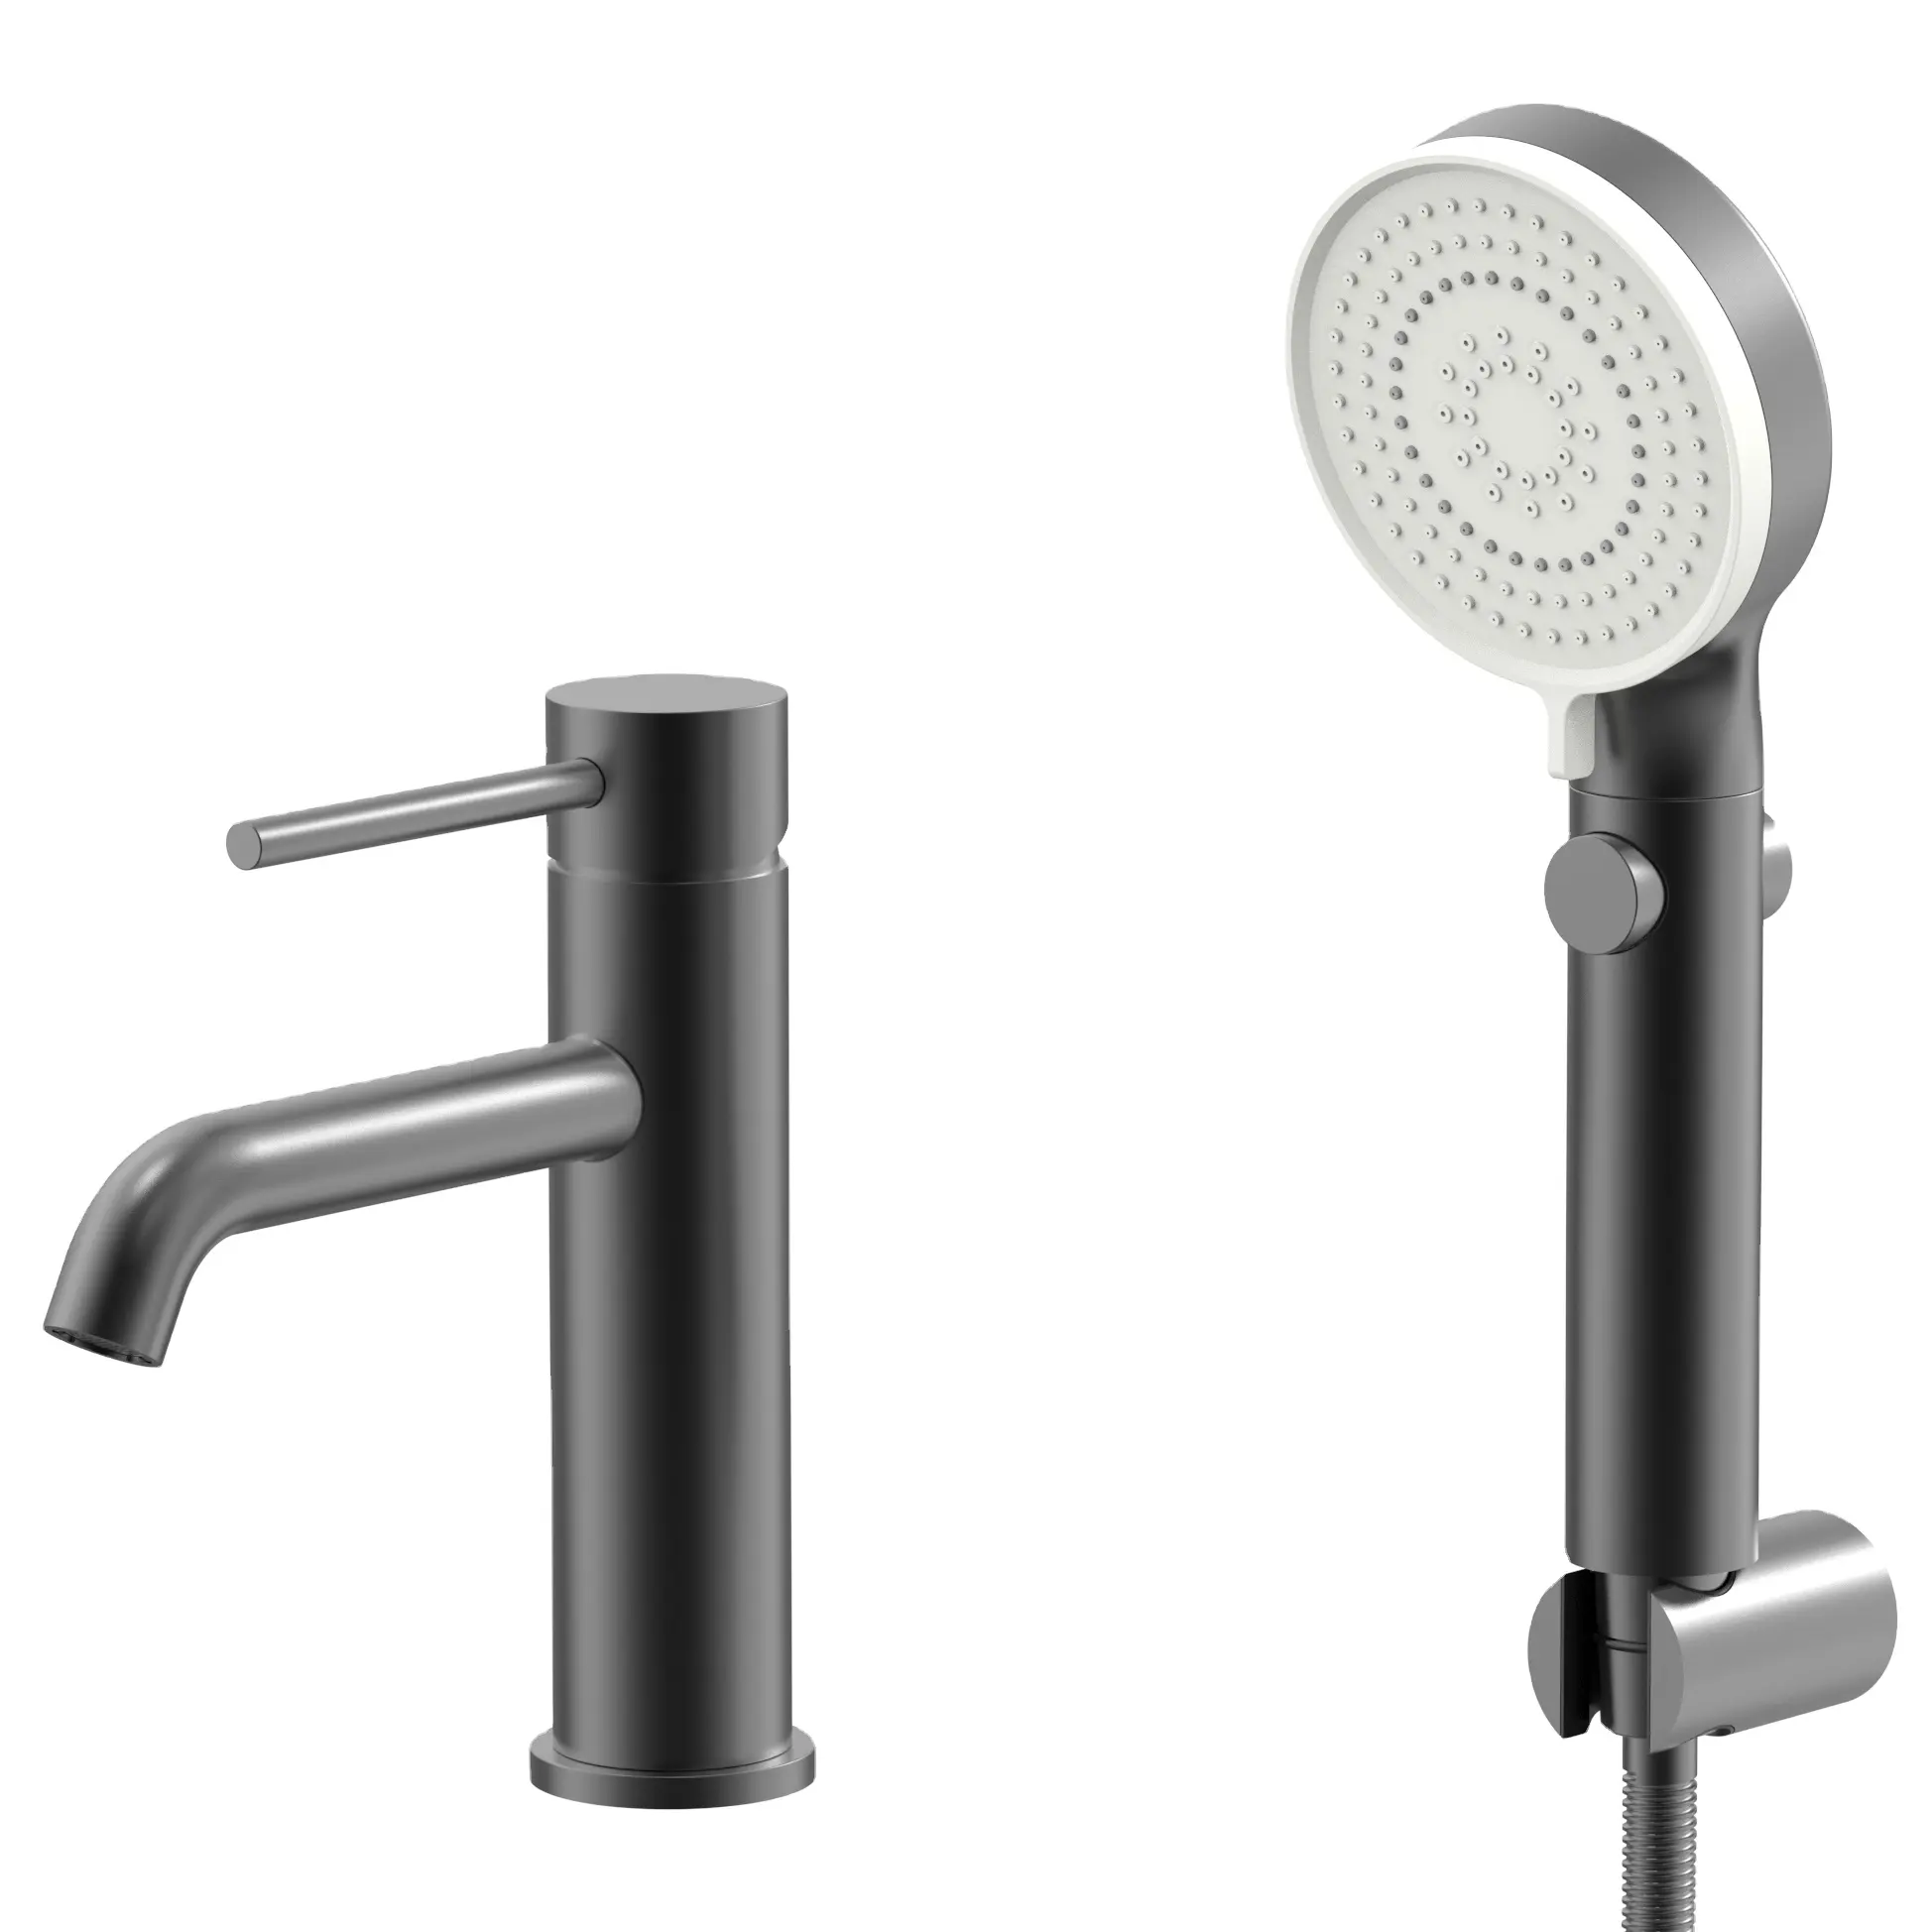 Yingchuan brevetto senza piombo rubinetto per lavabo in acciaio inossidabile 304 rotondo RV rubinetti miscelatore per lavabo con bidet spray vanity tapwares